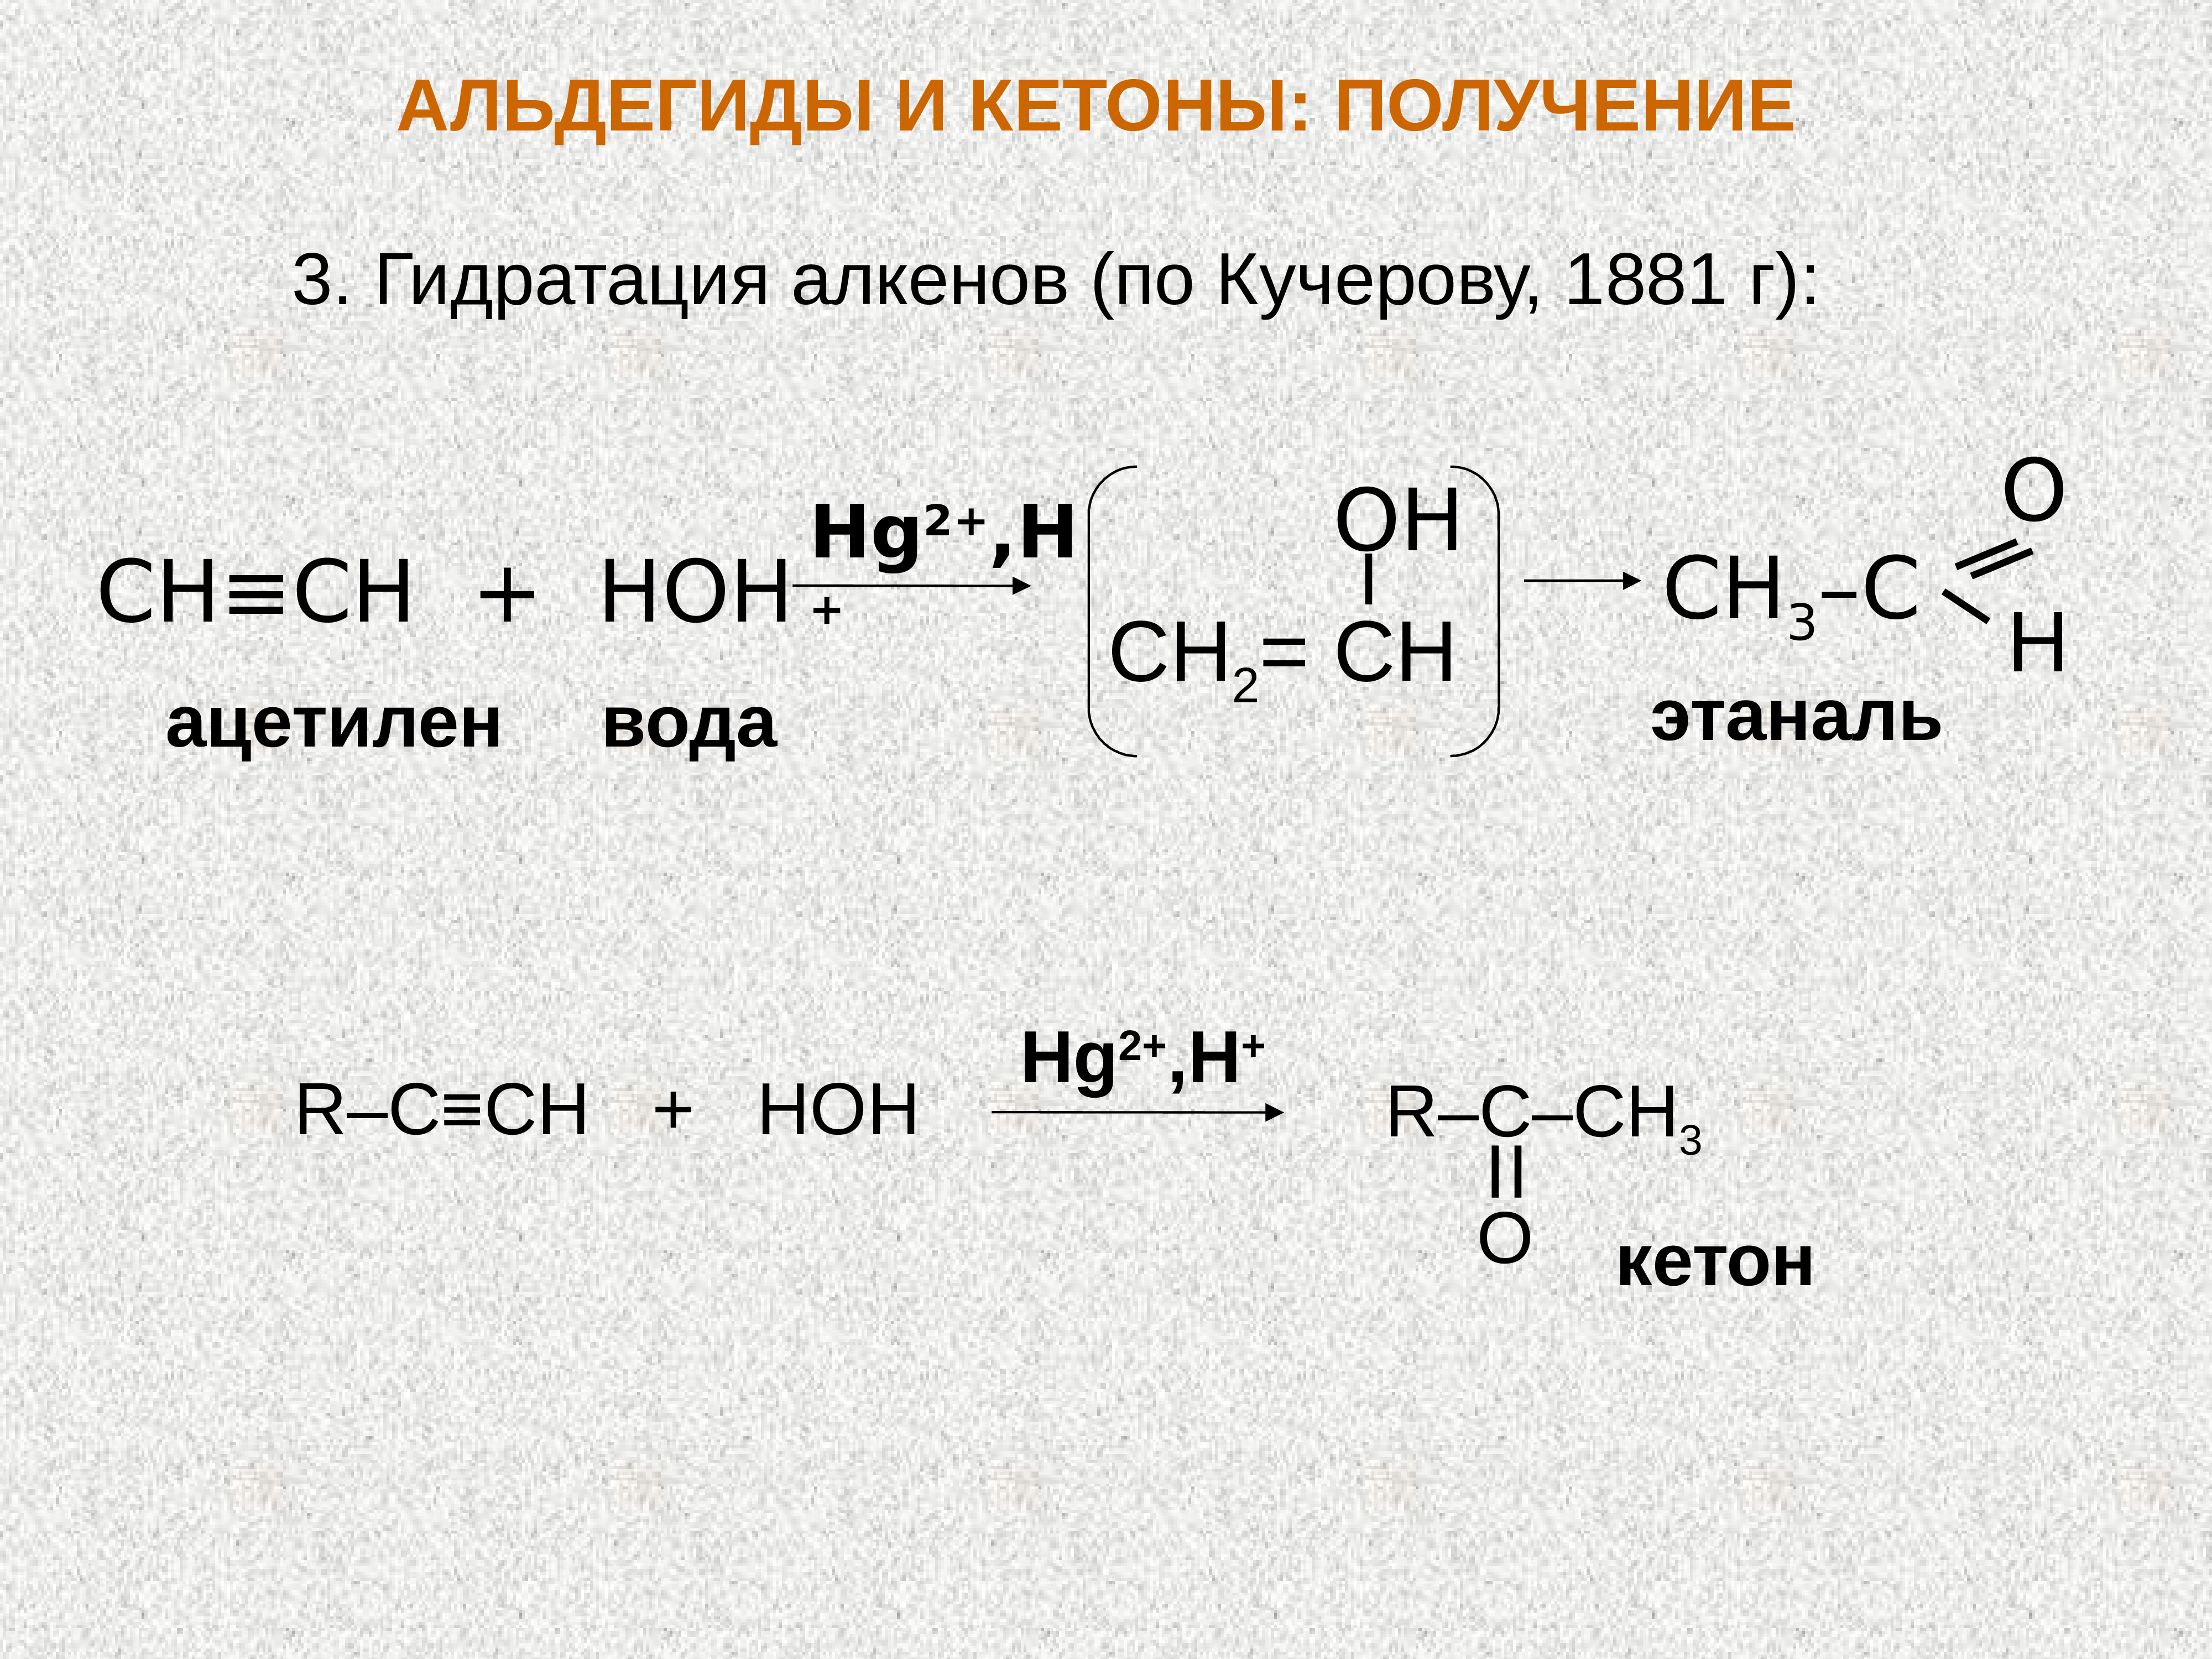 Взаимодействие ацетилена с водой реакция. Ацетилен и вода hg2+. Ацетилен + диэтилкетон. Ацетилен и вода реакция. Ацетилен плюс вода.